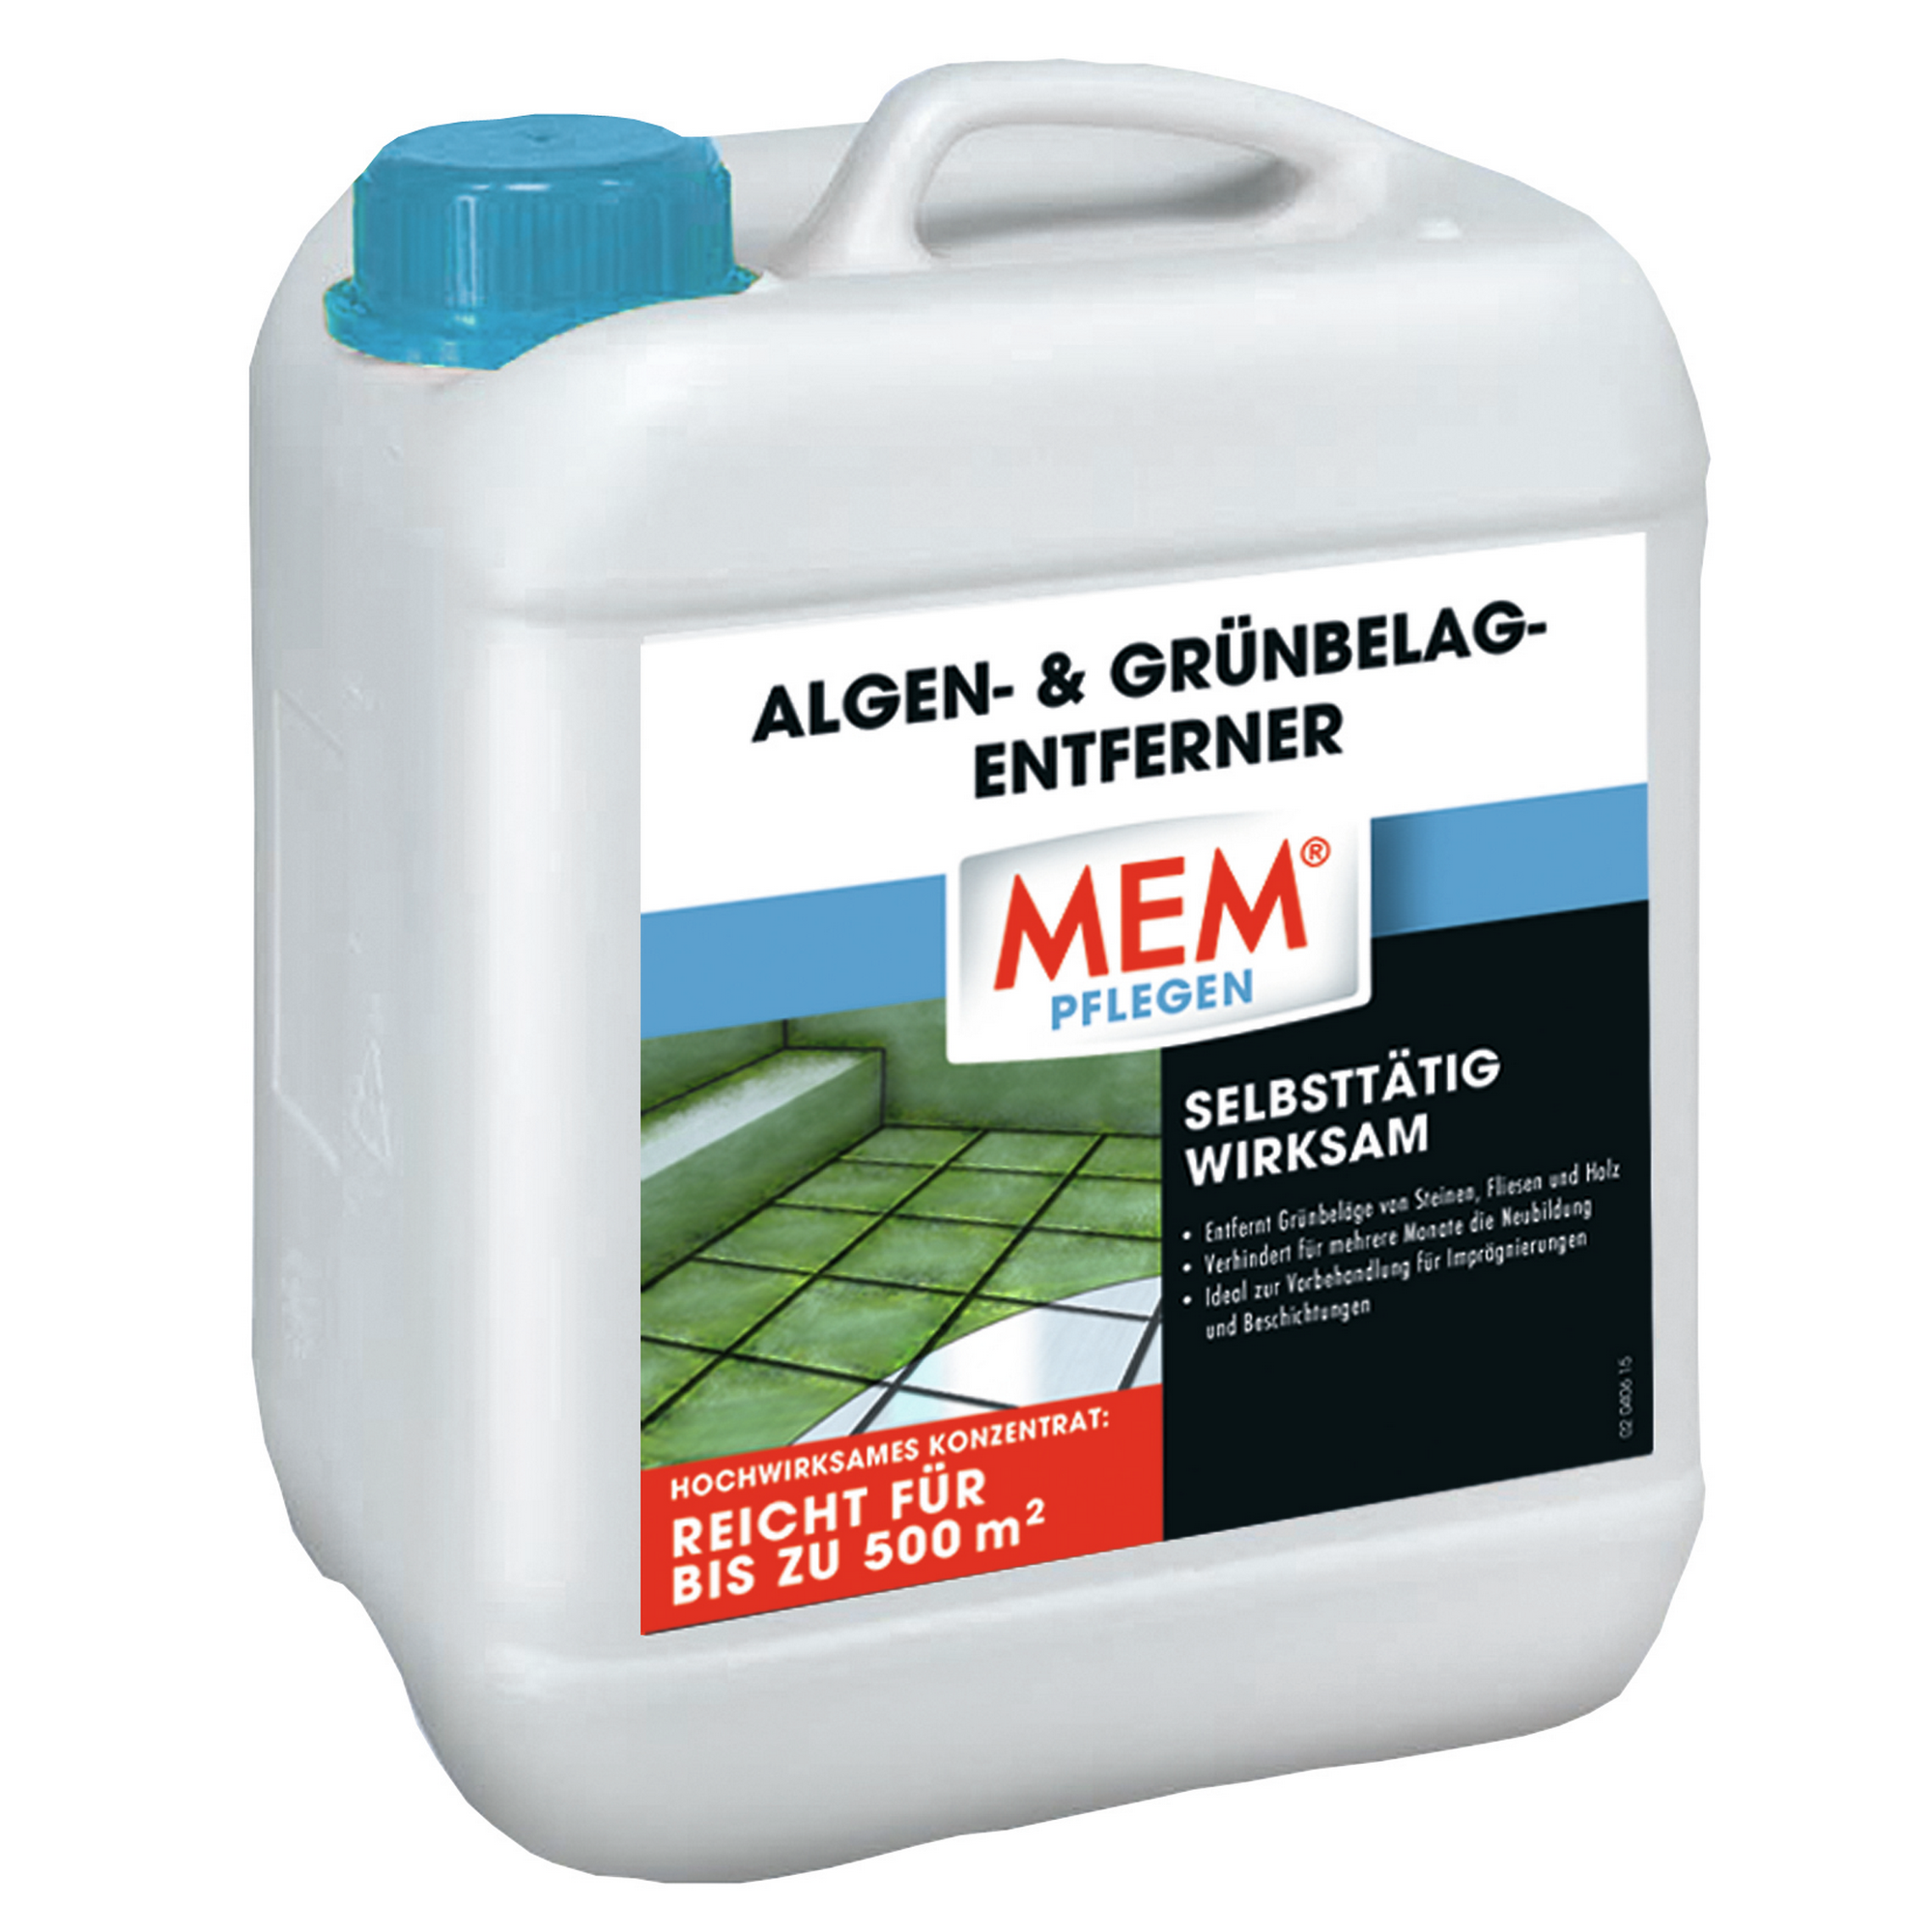 Algen- & Grünbelag-Entferner 5 l + product picture